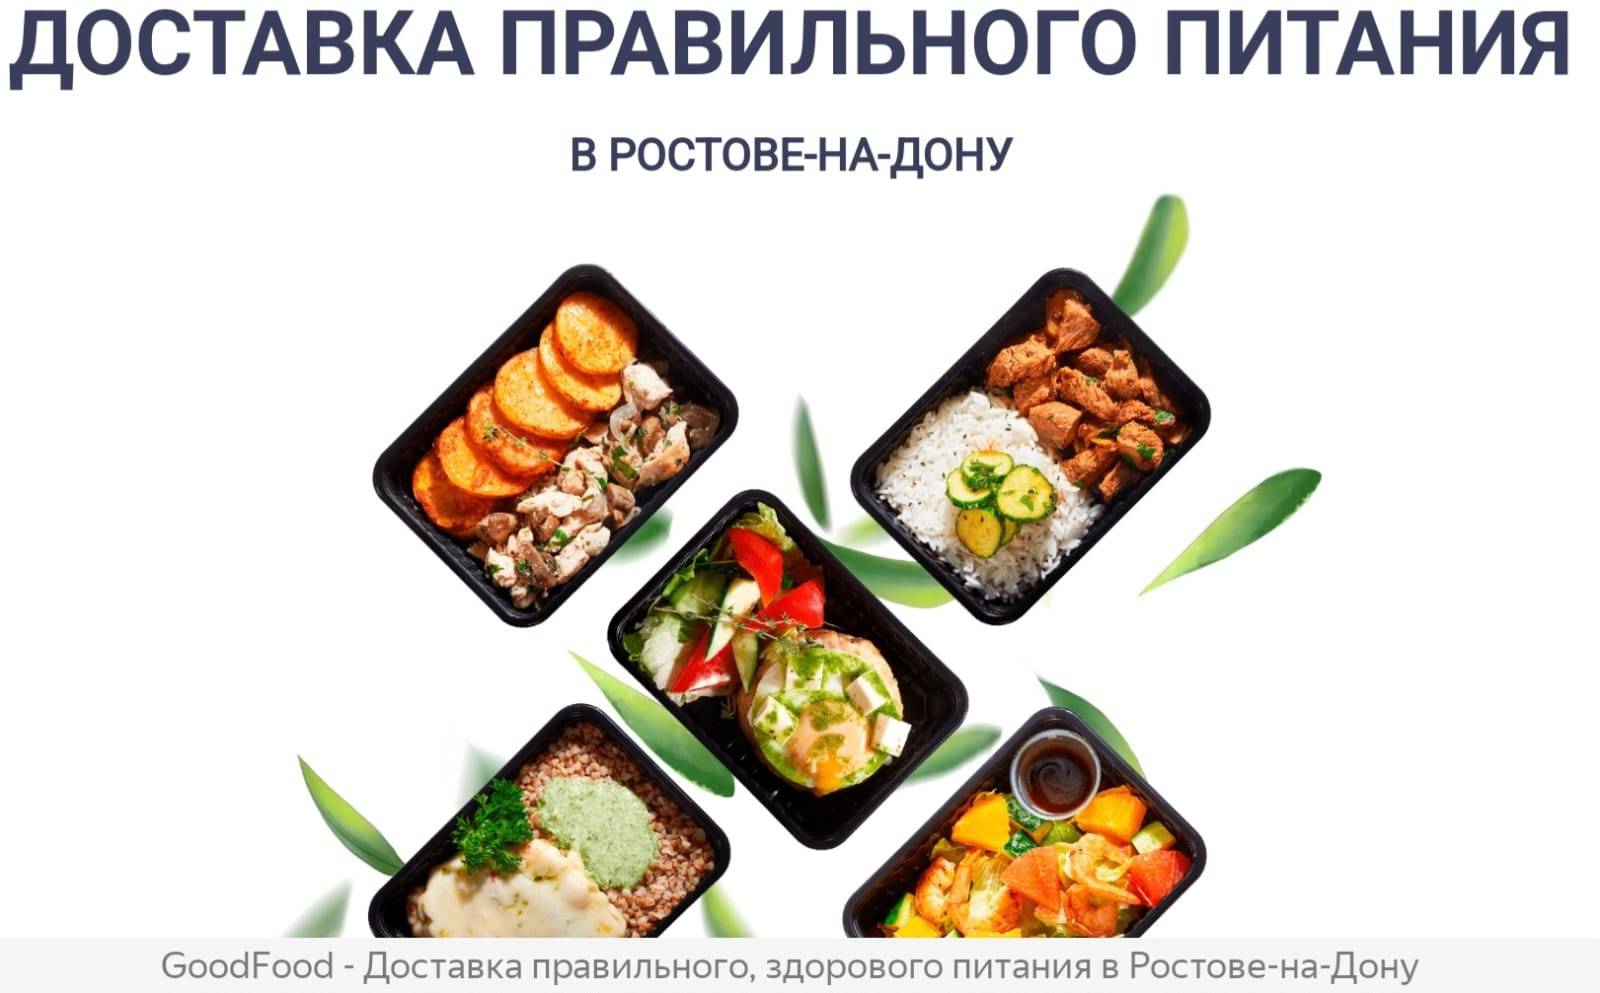 В Ростове начинается суд по делу об отравлении 176 человек едой с бактериями сальмонеллы